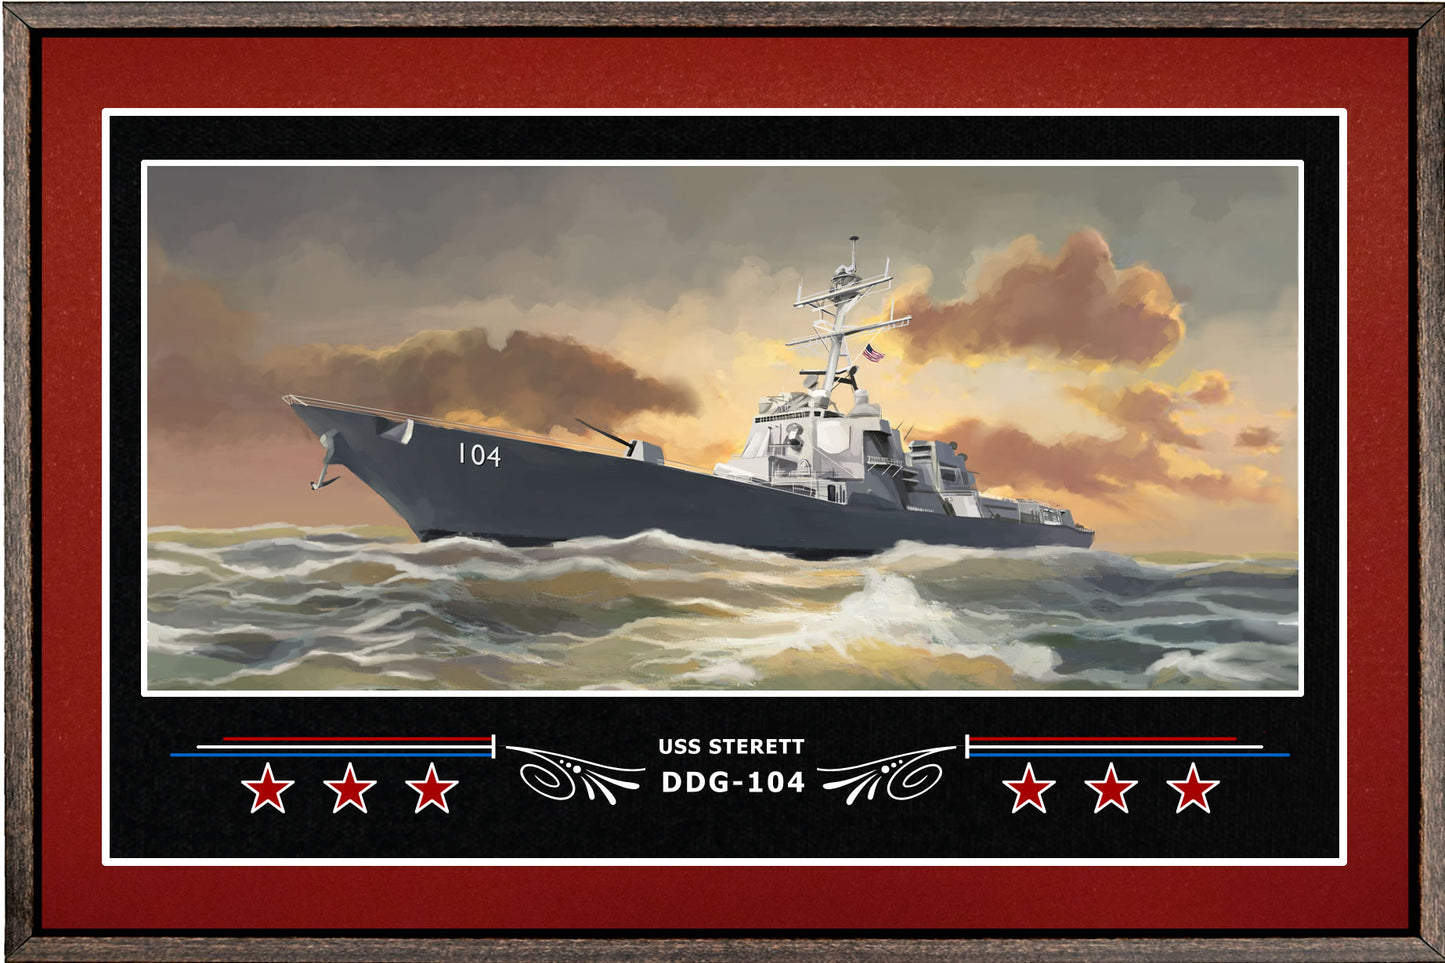 USS STERETT DDG 104 BOX FRAMED CANVAS ART BURGUNDY